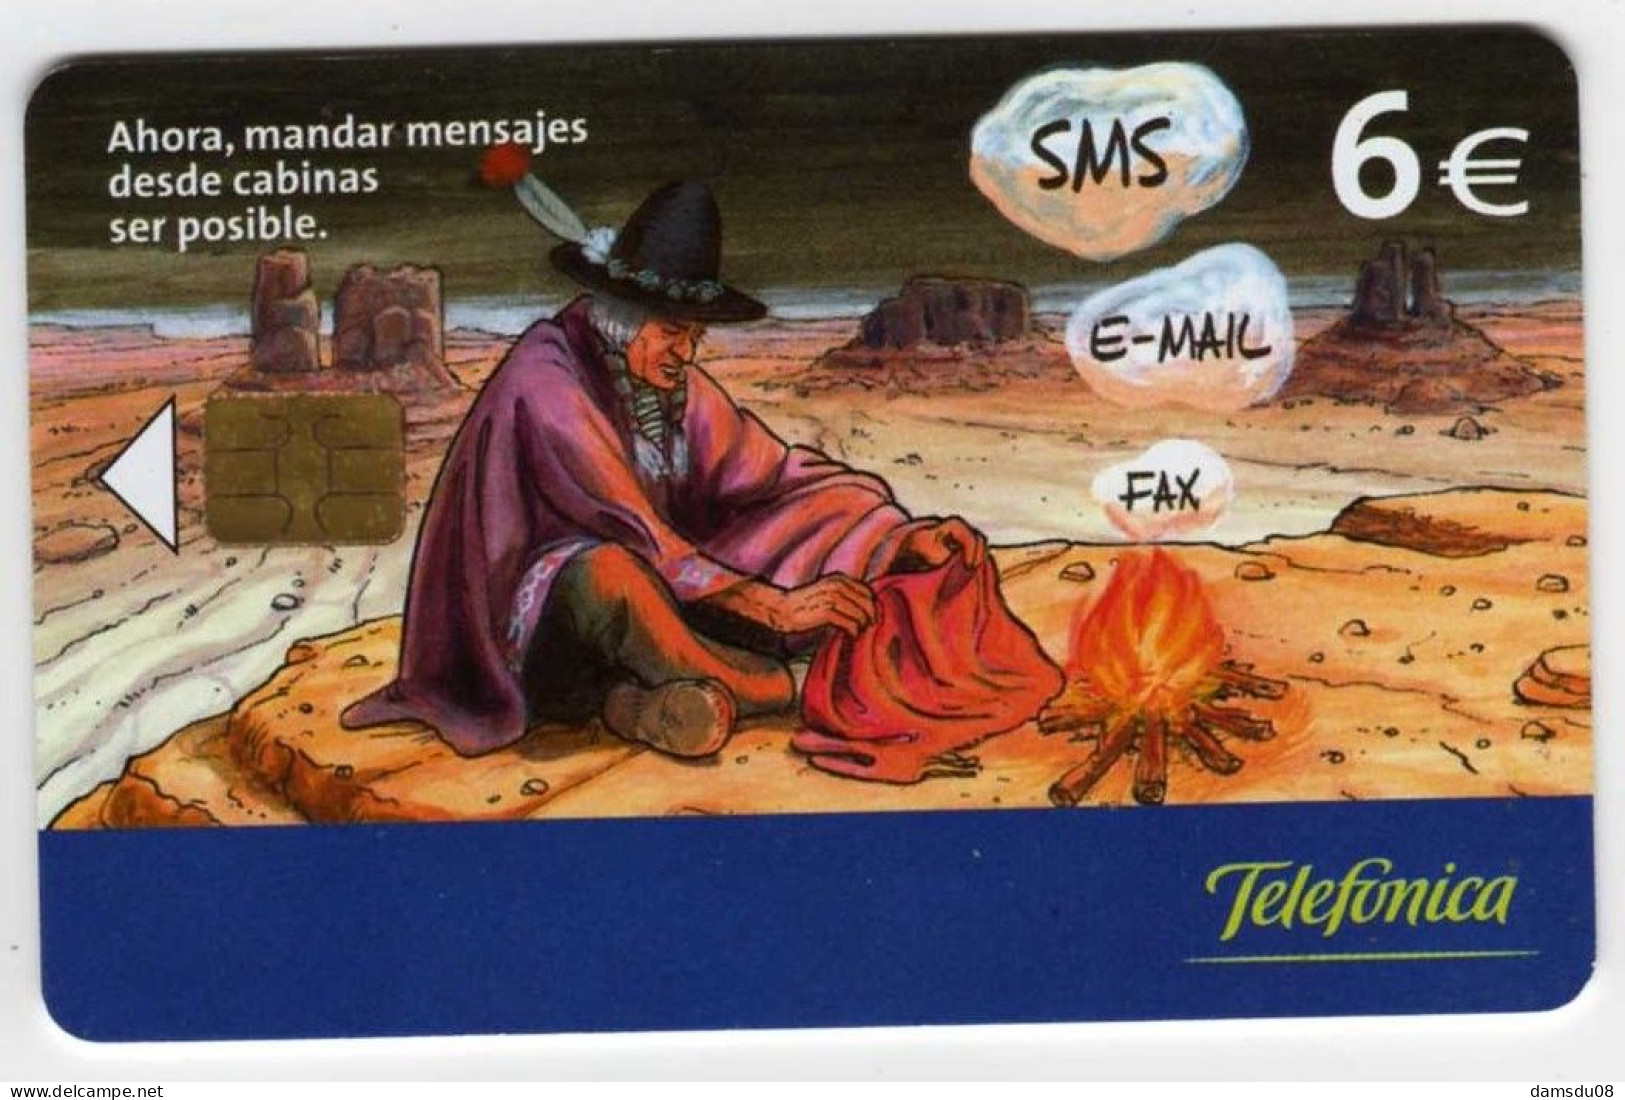 Espagne 6€ BD Indien SMS E-MAIL FAX  07/03 501.400 Exemplaires Vide - Emissions Basiques